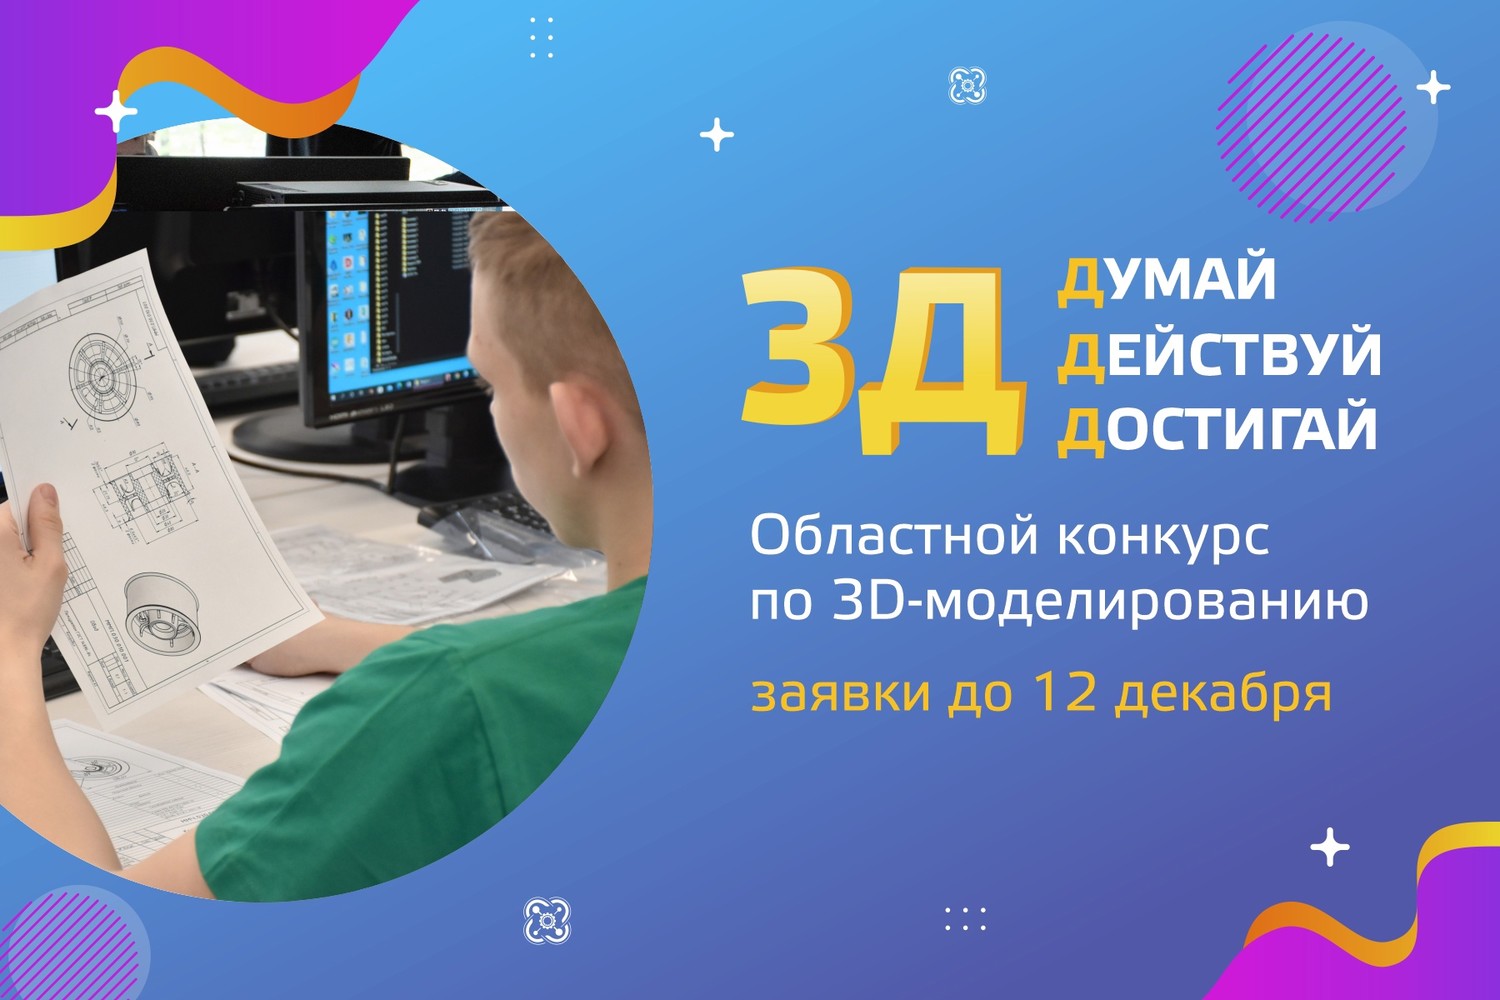 Областной конкурс по 3D-моделированию «3Д: думай, действуй, достигай!»